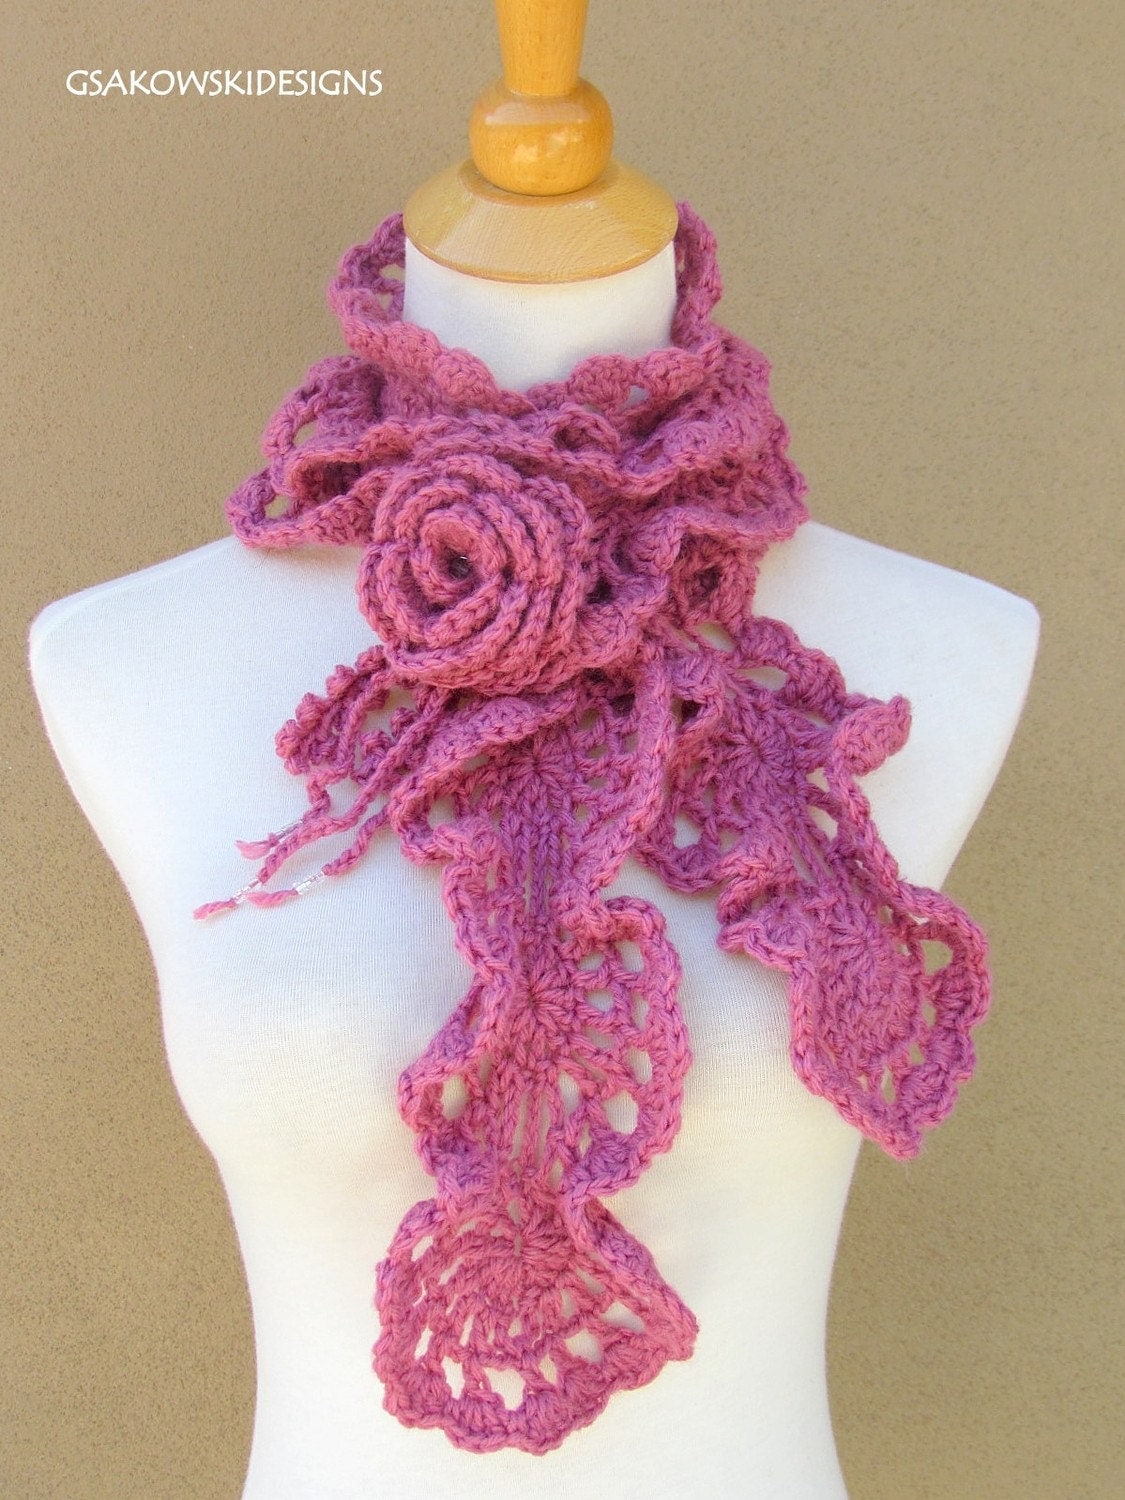 CROCHET RUFFLE SCARF PATTERN | Crochet For Beginners